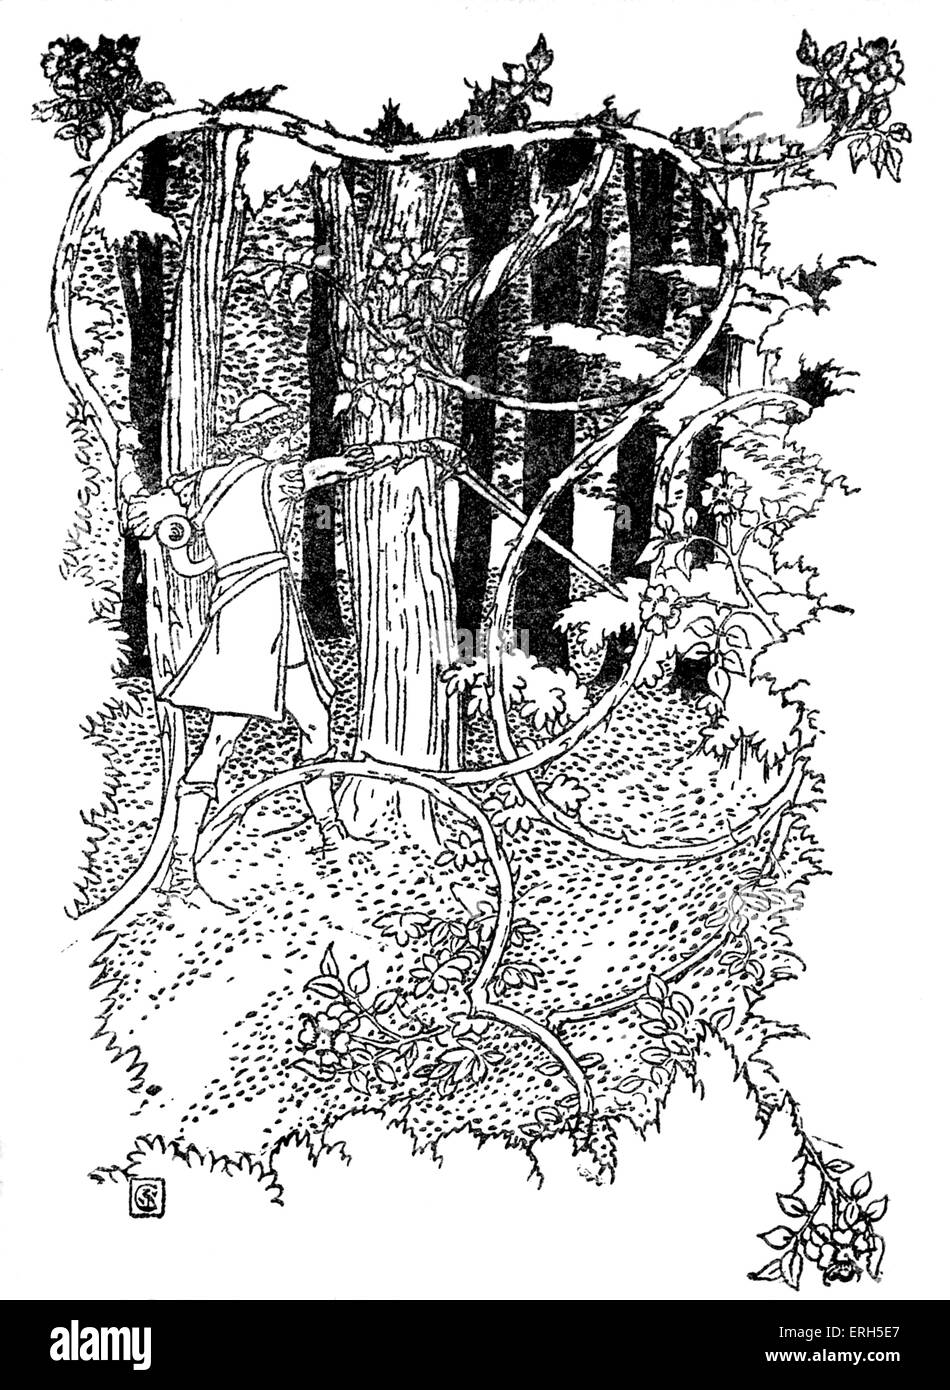 Sleeping Beauty écrit et illustré par Walter Crane et publiée en 1914. La scène représente le prince son chemin de coupe Banque D'Images